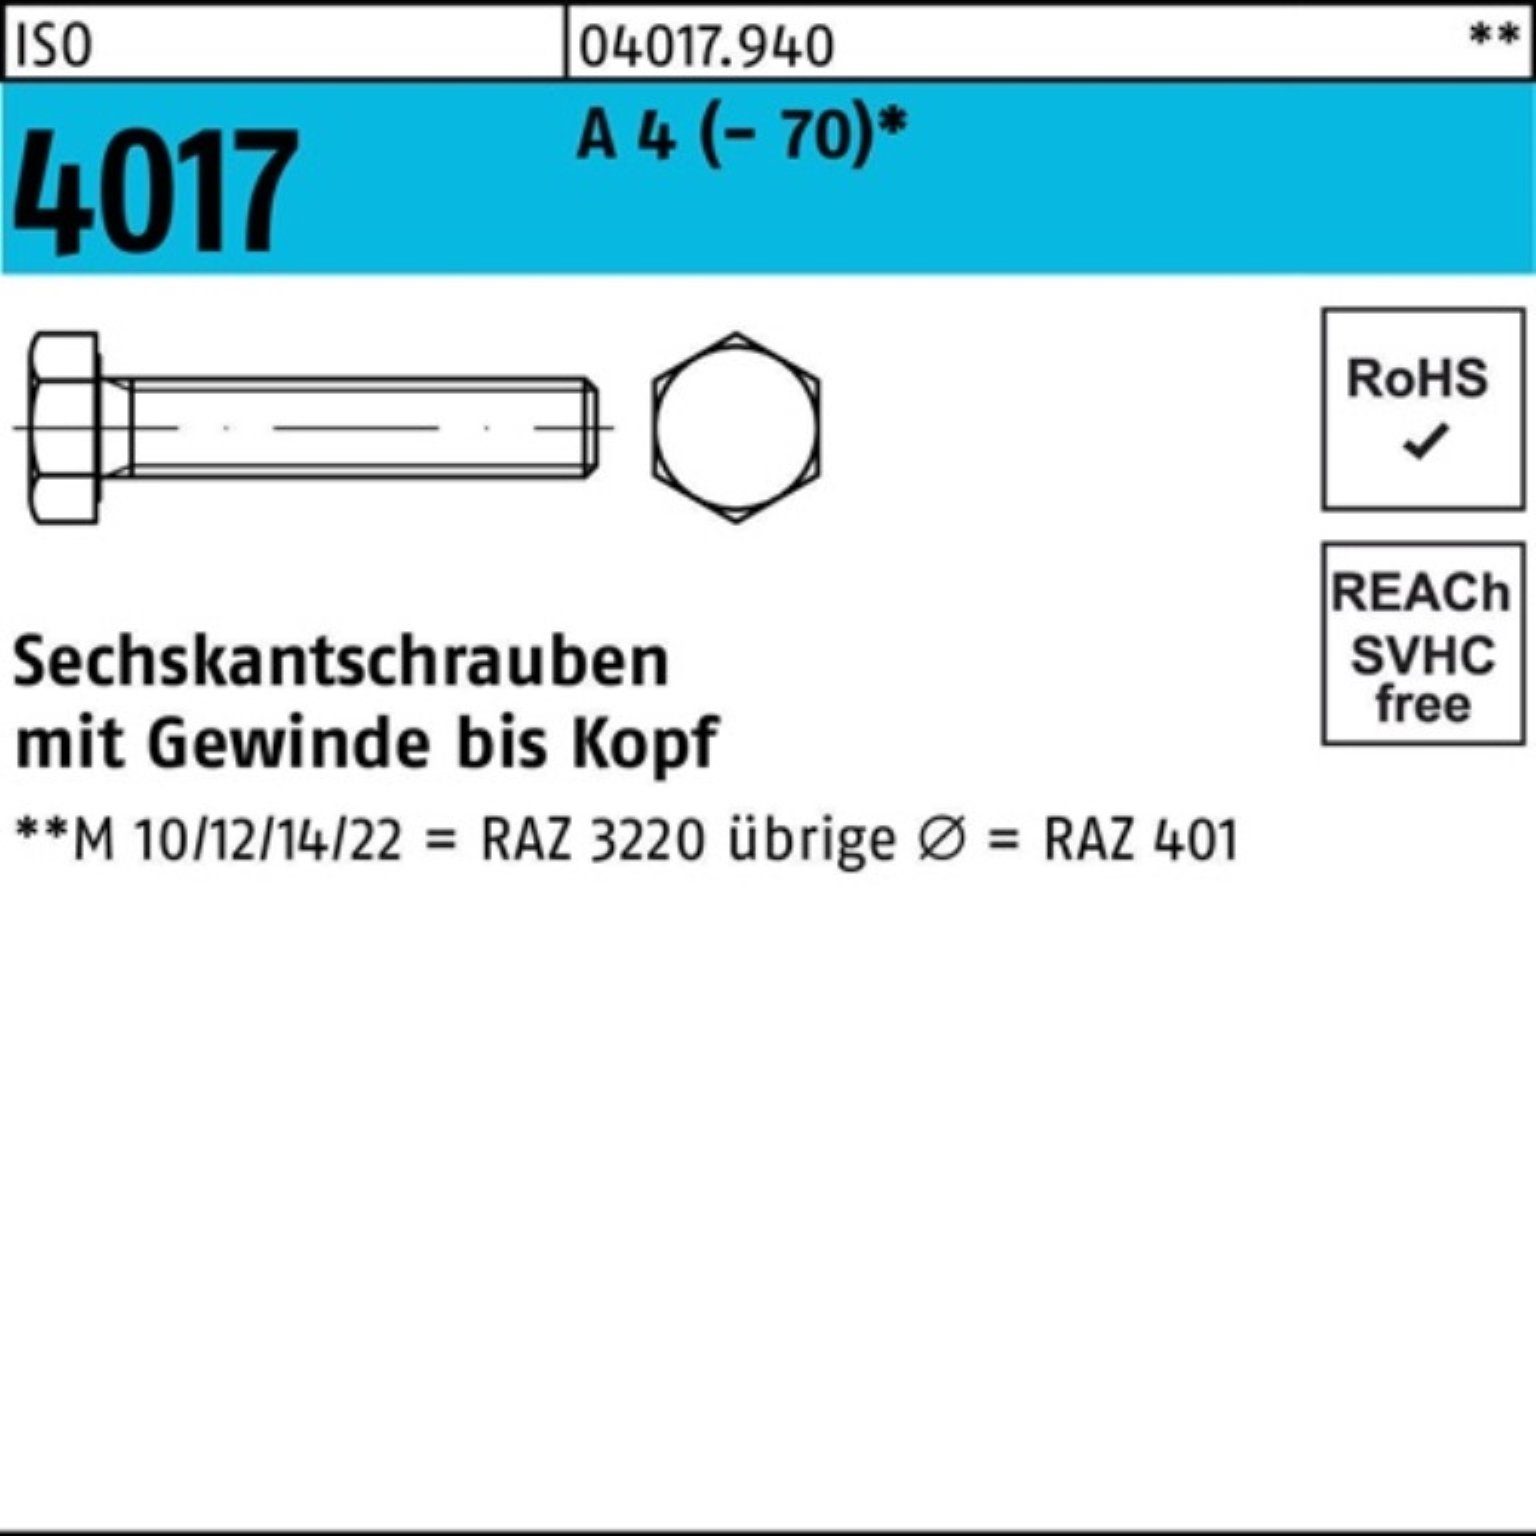 Sechskantschraube Bufab 4 VG 100er ISO 1 M20x (70) 4017 Sechskantschraube Stück Pack 180 A